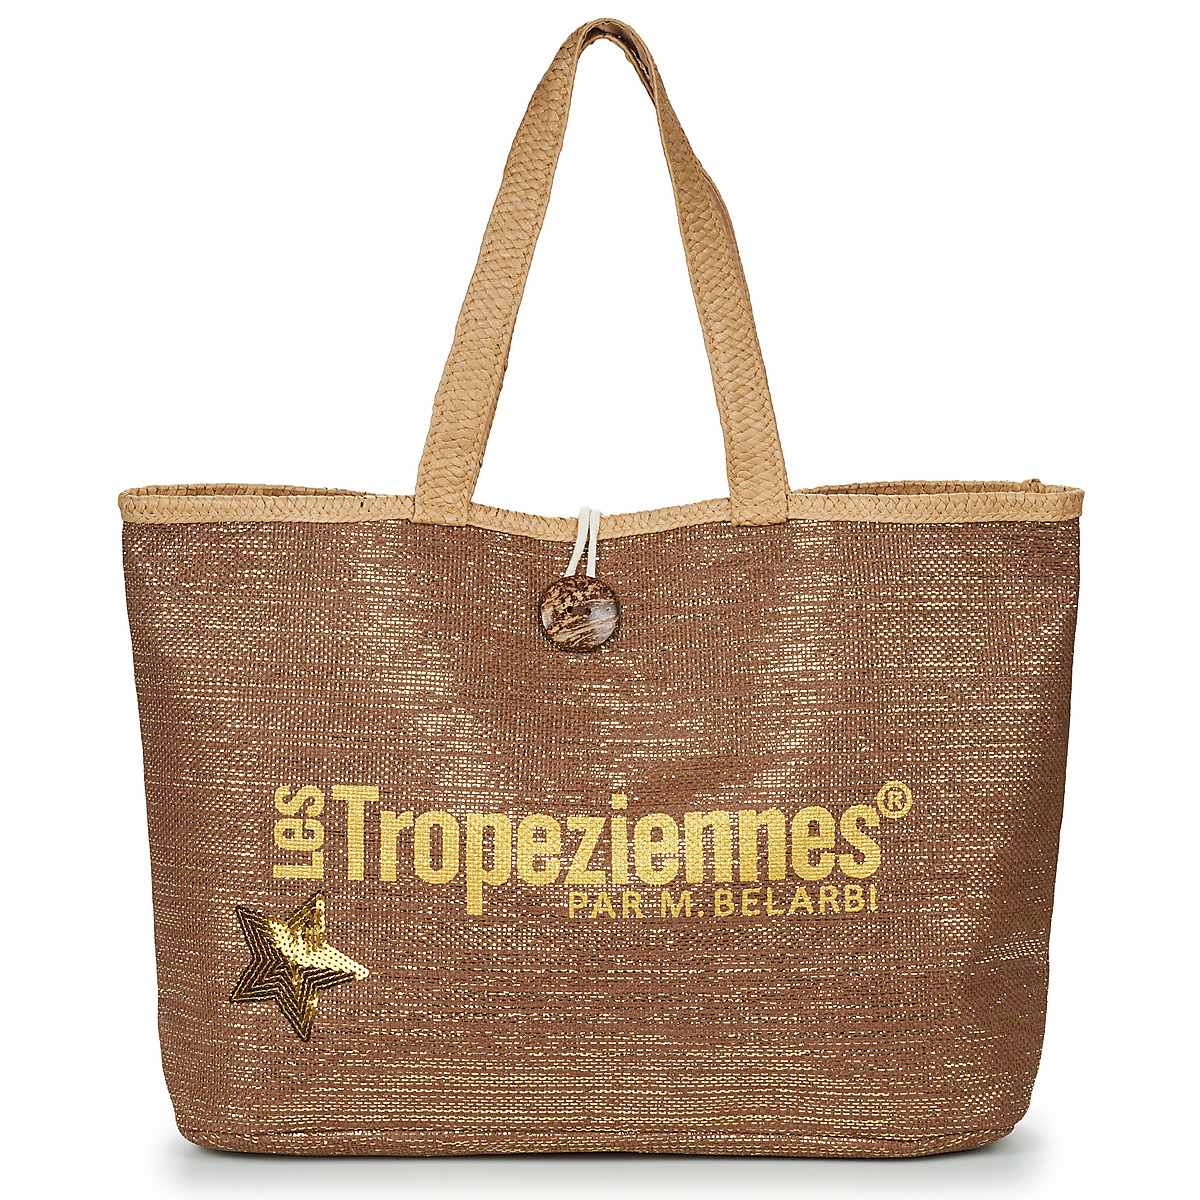 Borse Donna Tote bag / Borsa shopping Les Tropéziennes par M Belarbi PANAMA Marrone